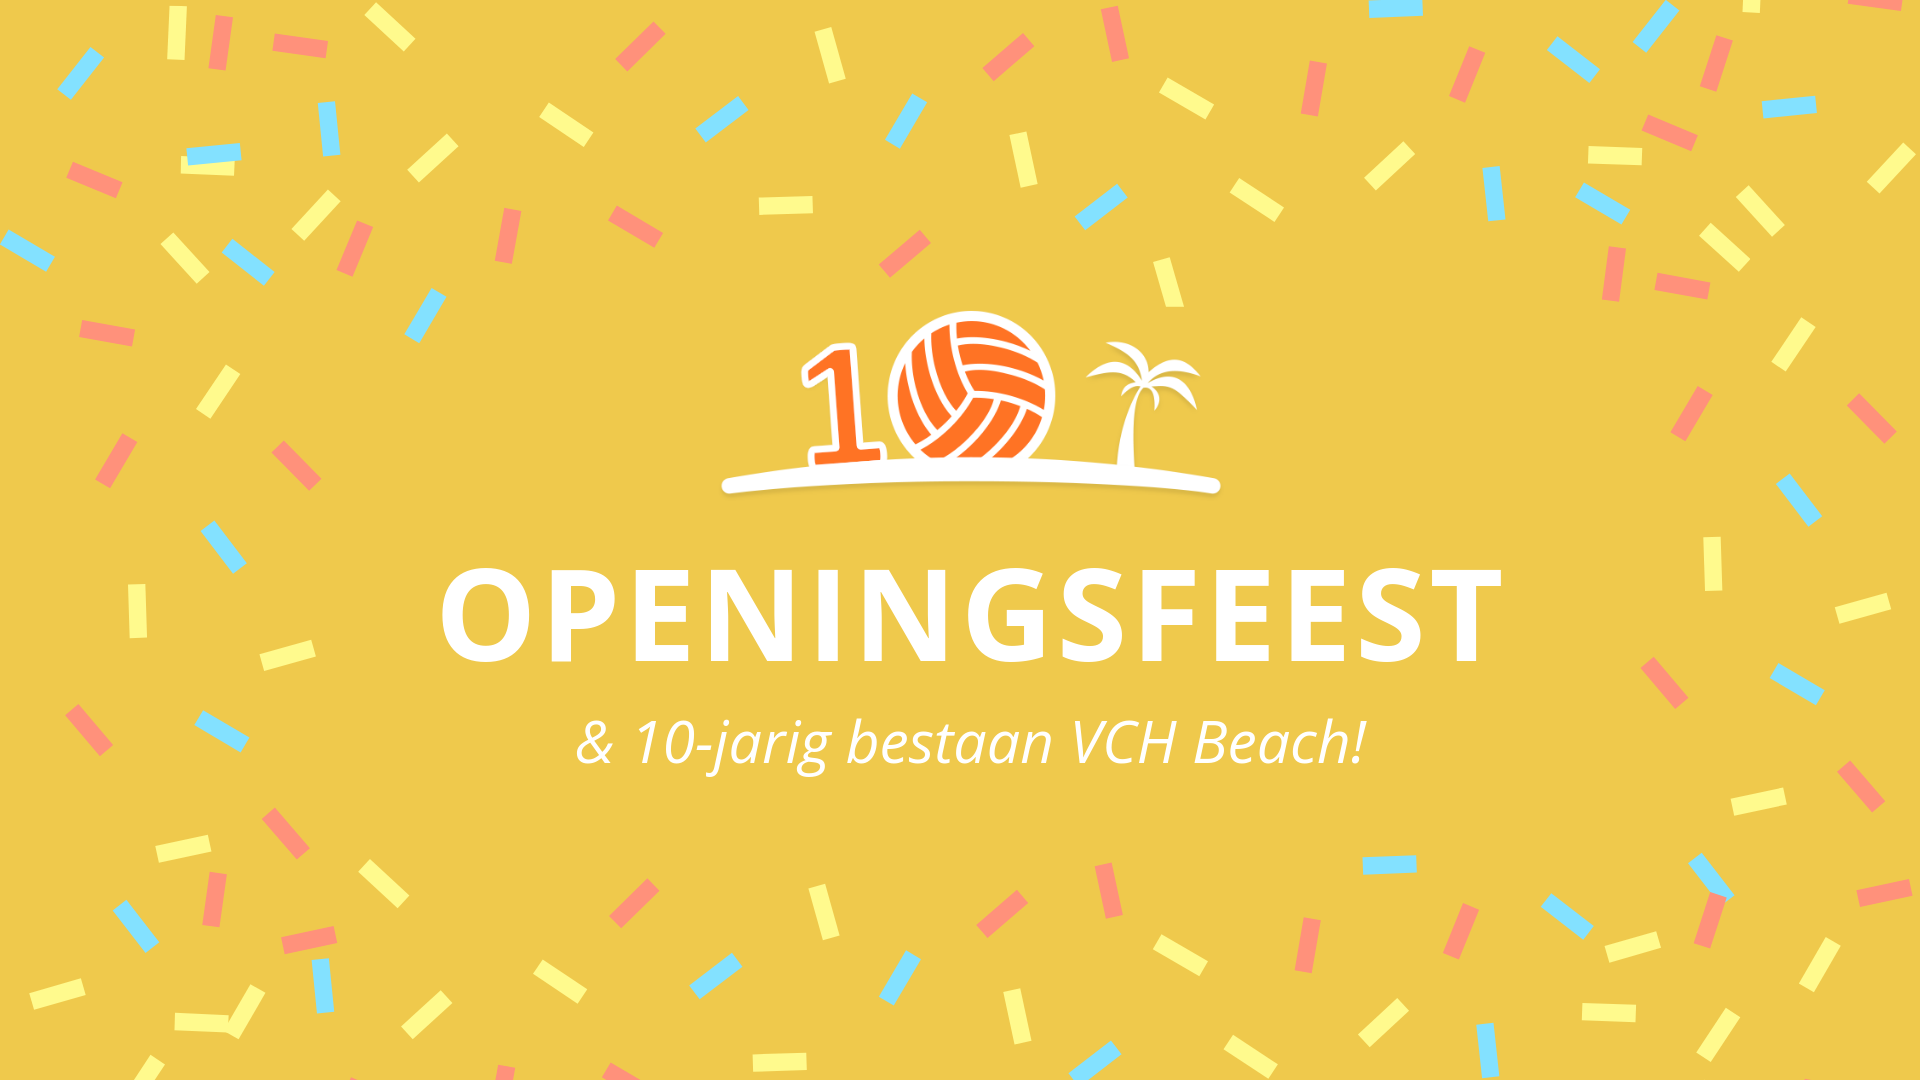 openingsfeest vch beach